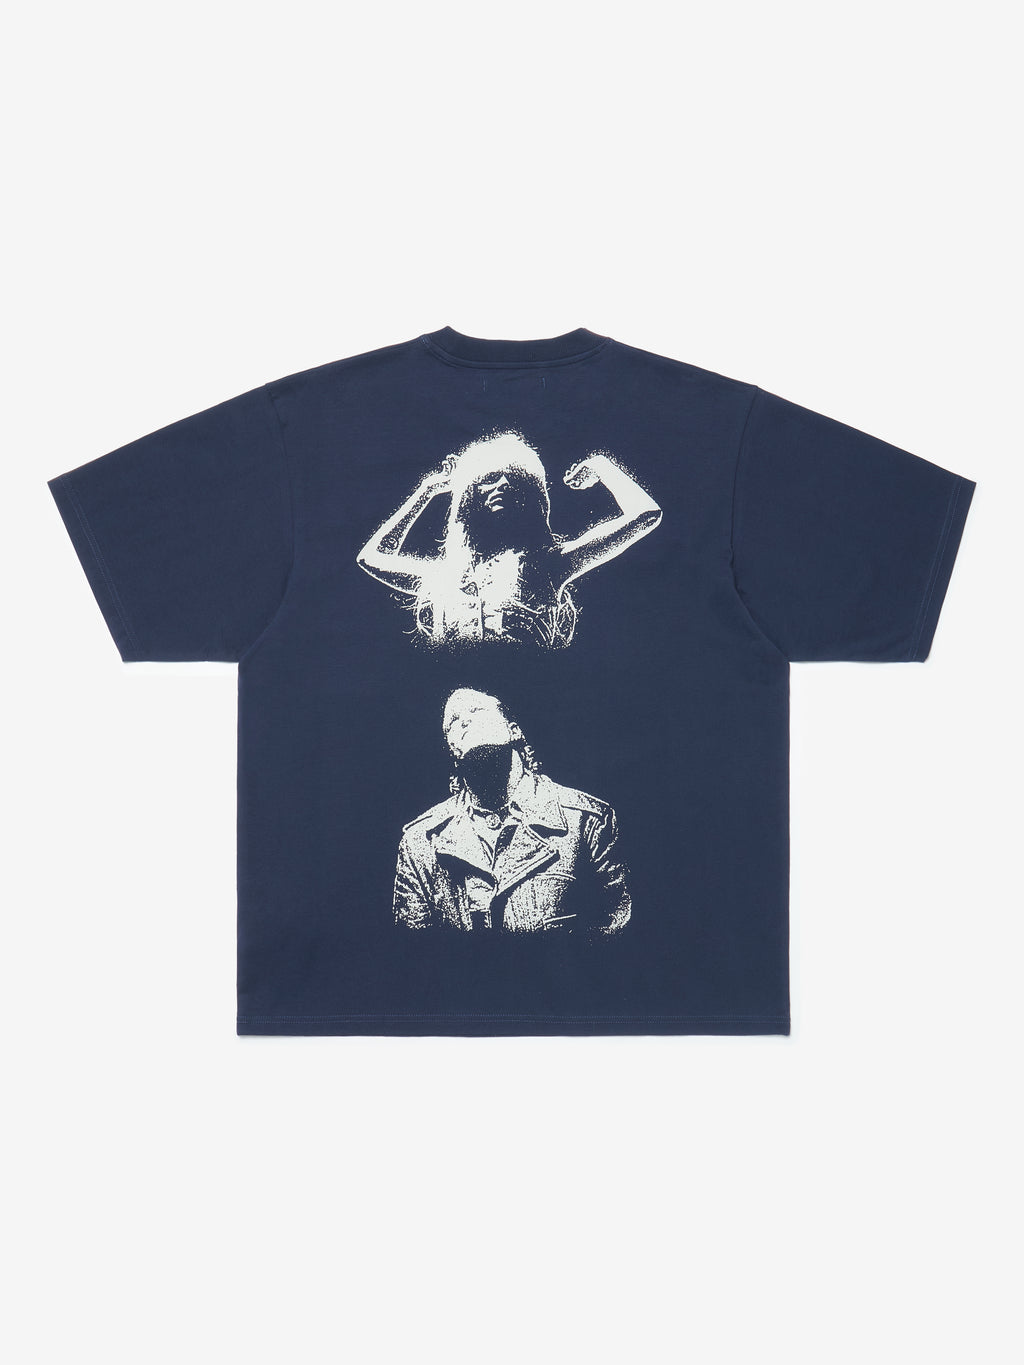 Fate T-Shirt - Navy